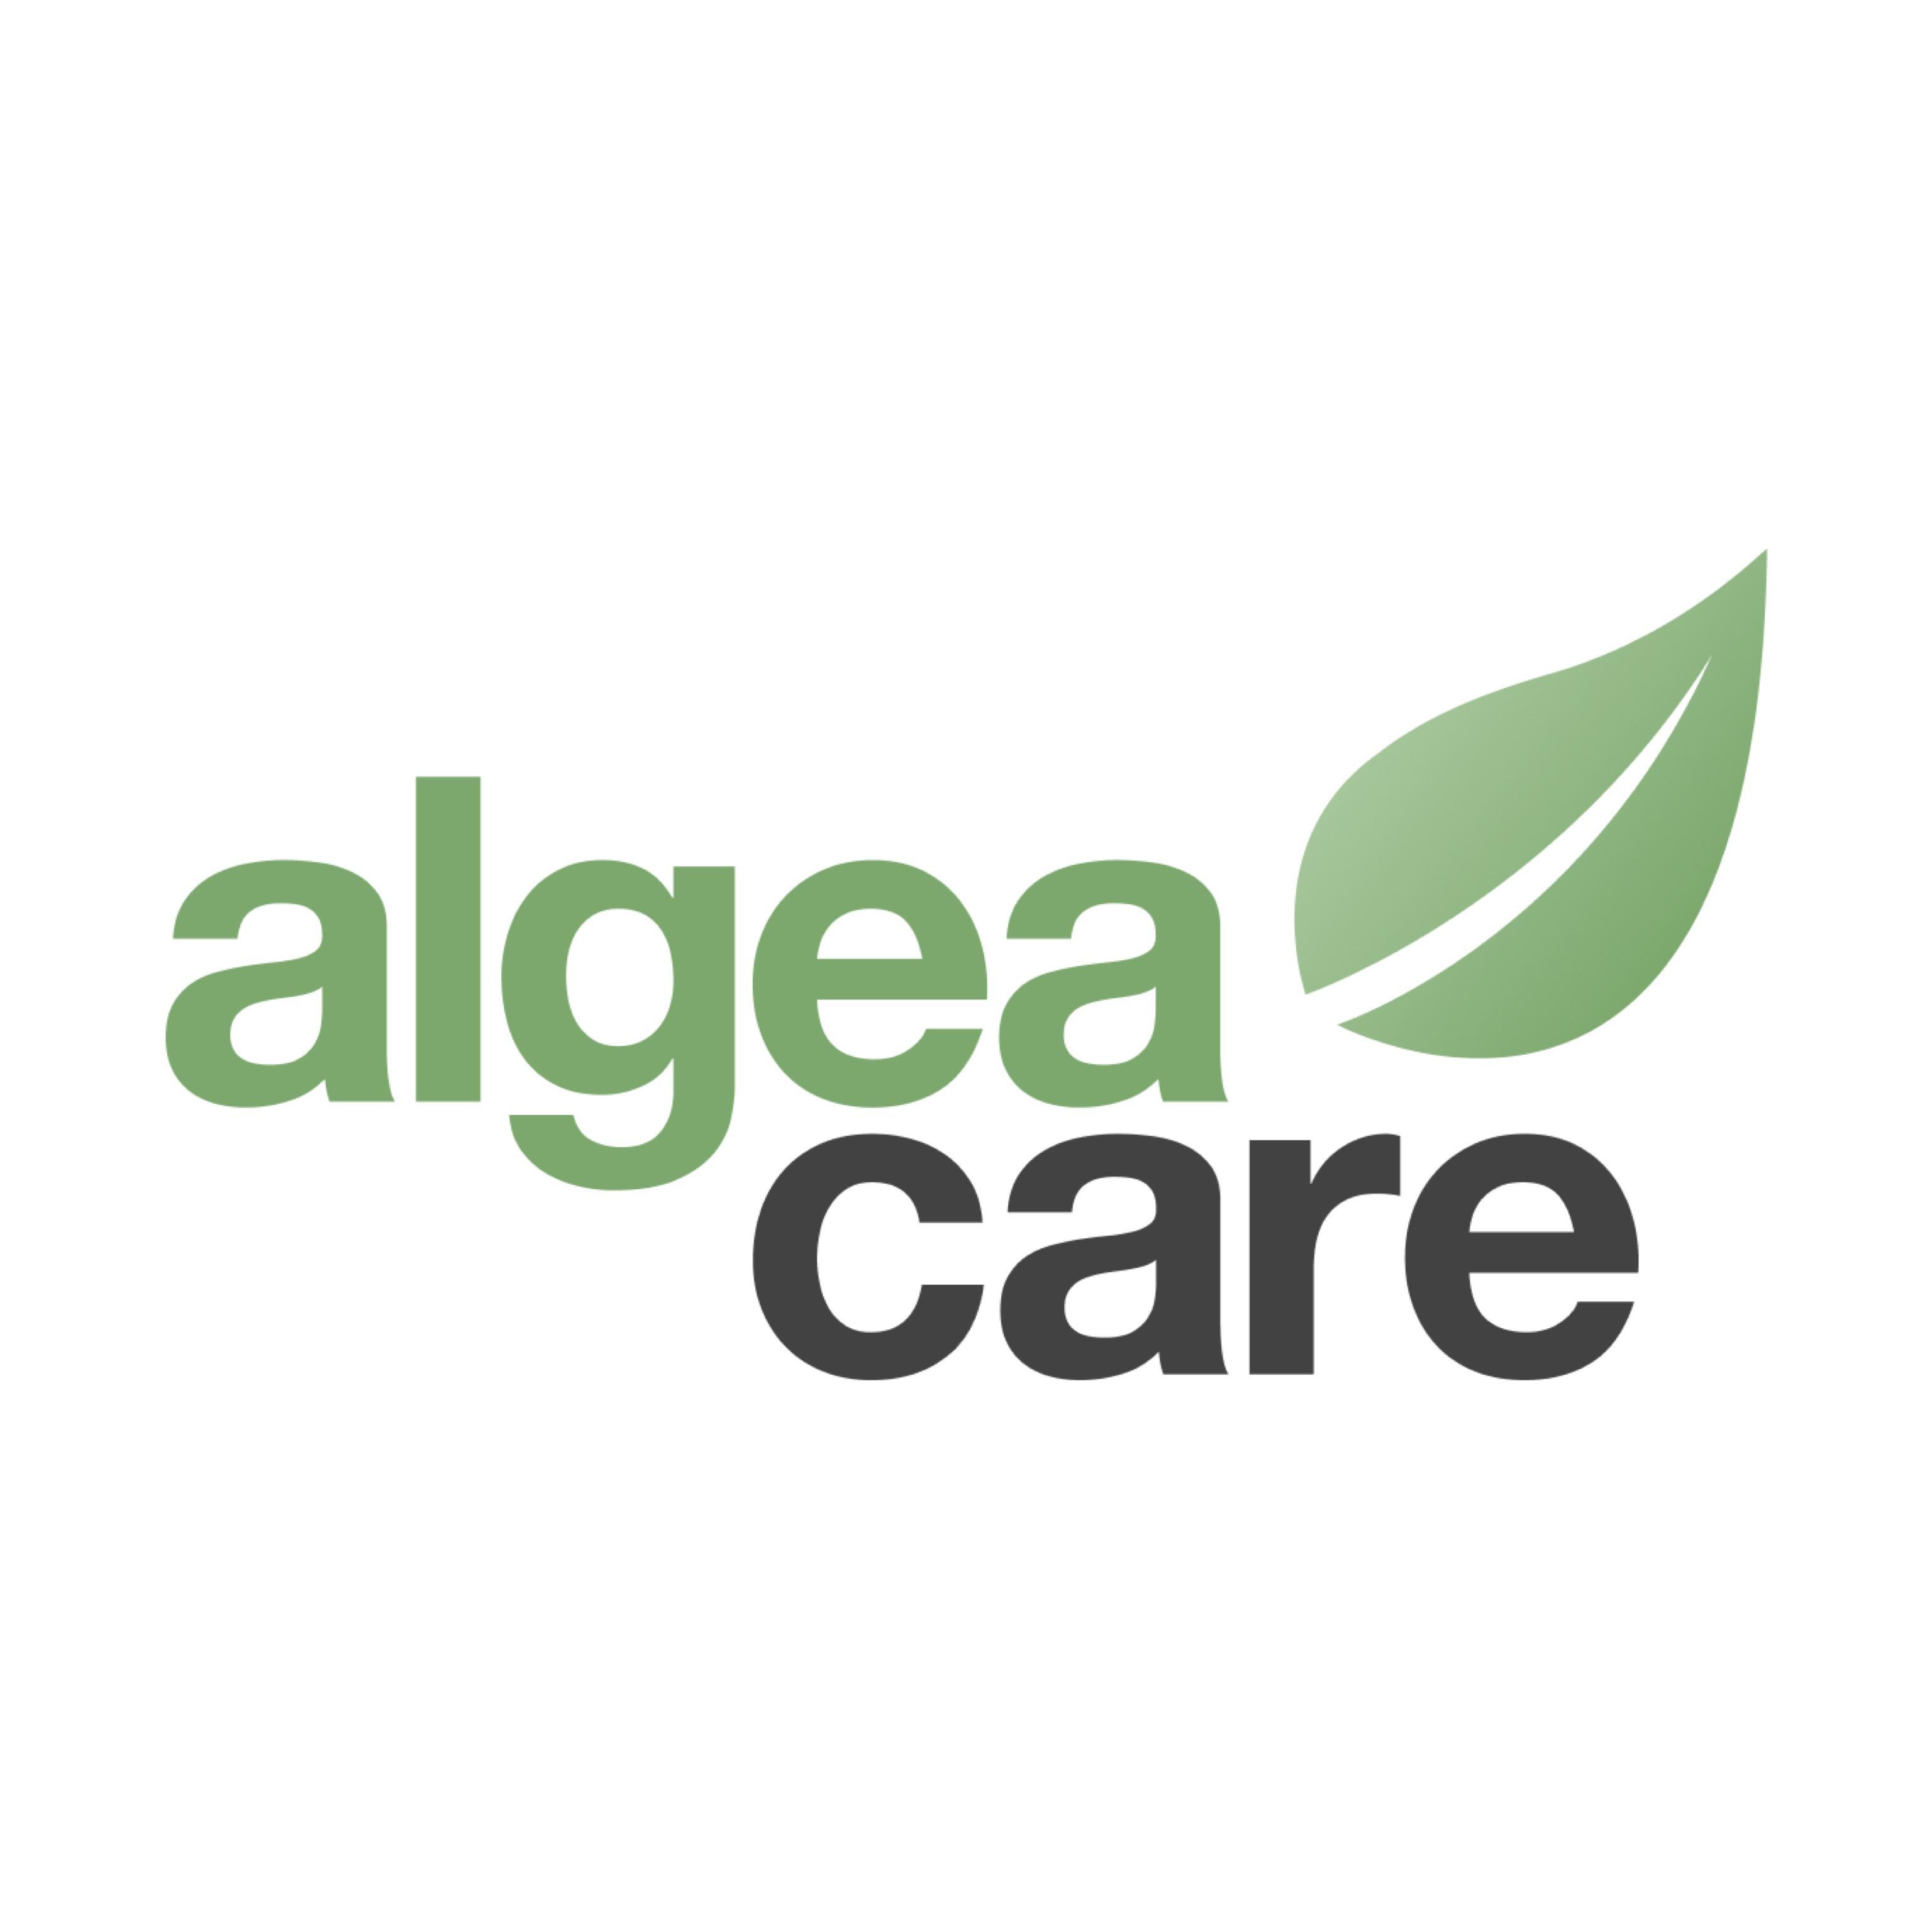 Algea Care Therapiezentrum Hamburg in Hamburg - Logo